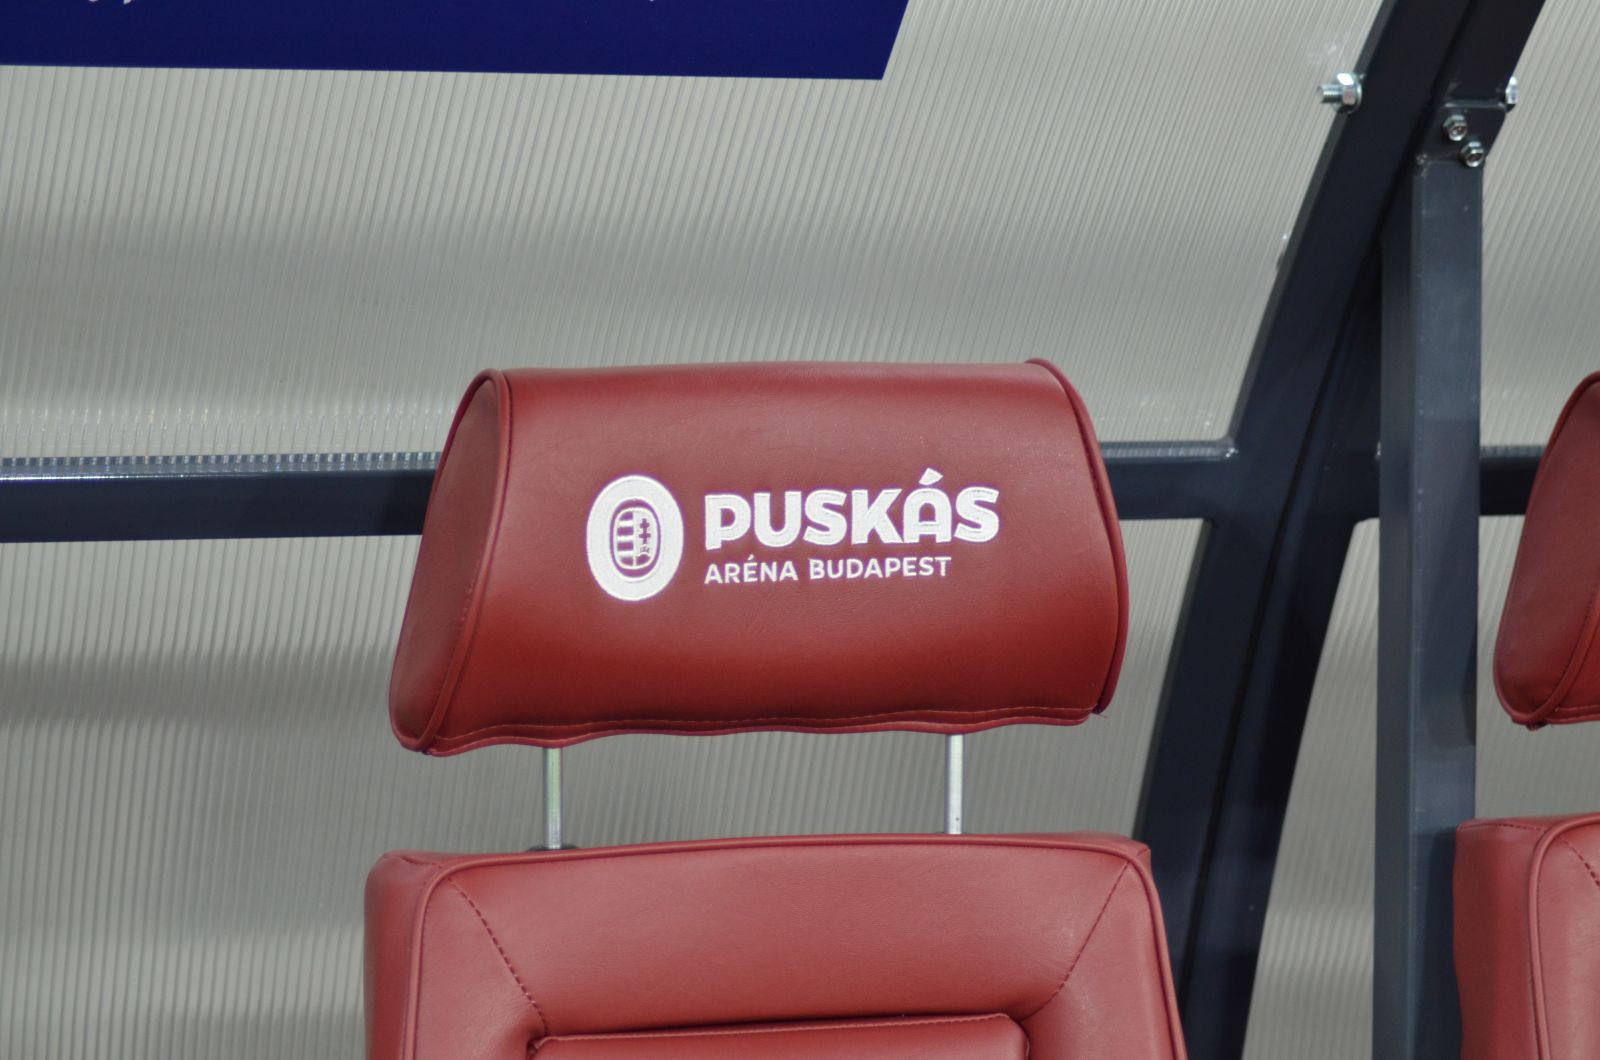 A cserepadoknál Puskás Aréna Budapest felirattal és a Magyar Labdarúgó Szövetség logójával ellátott kényelmes bőrülések csalogatnak.
